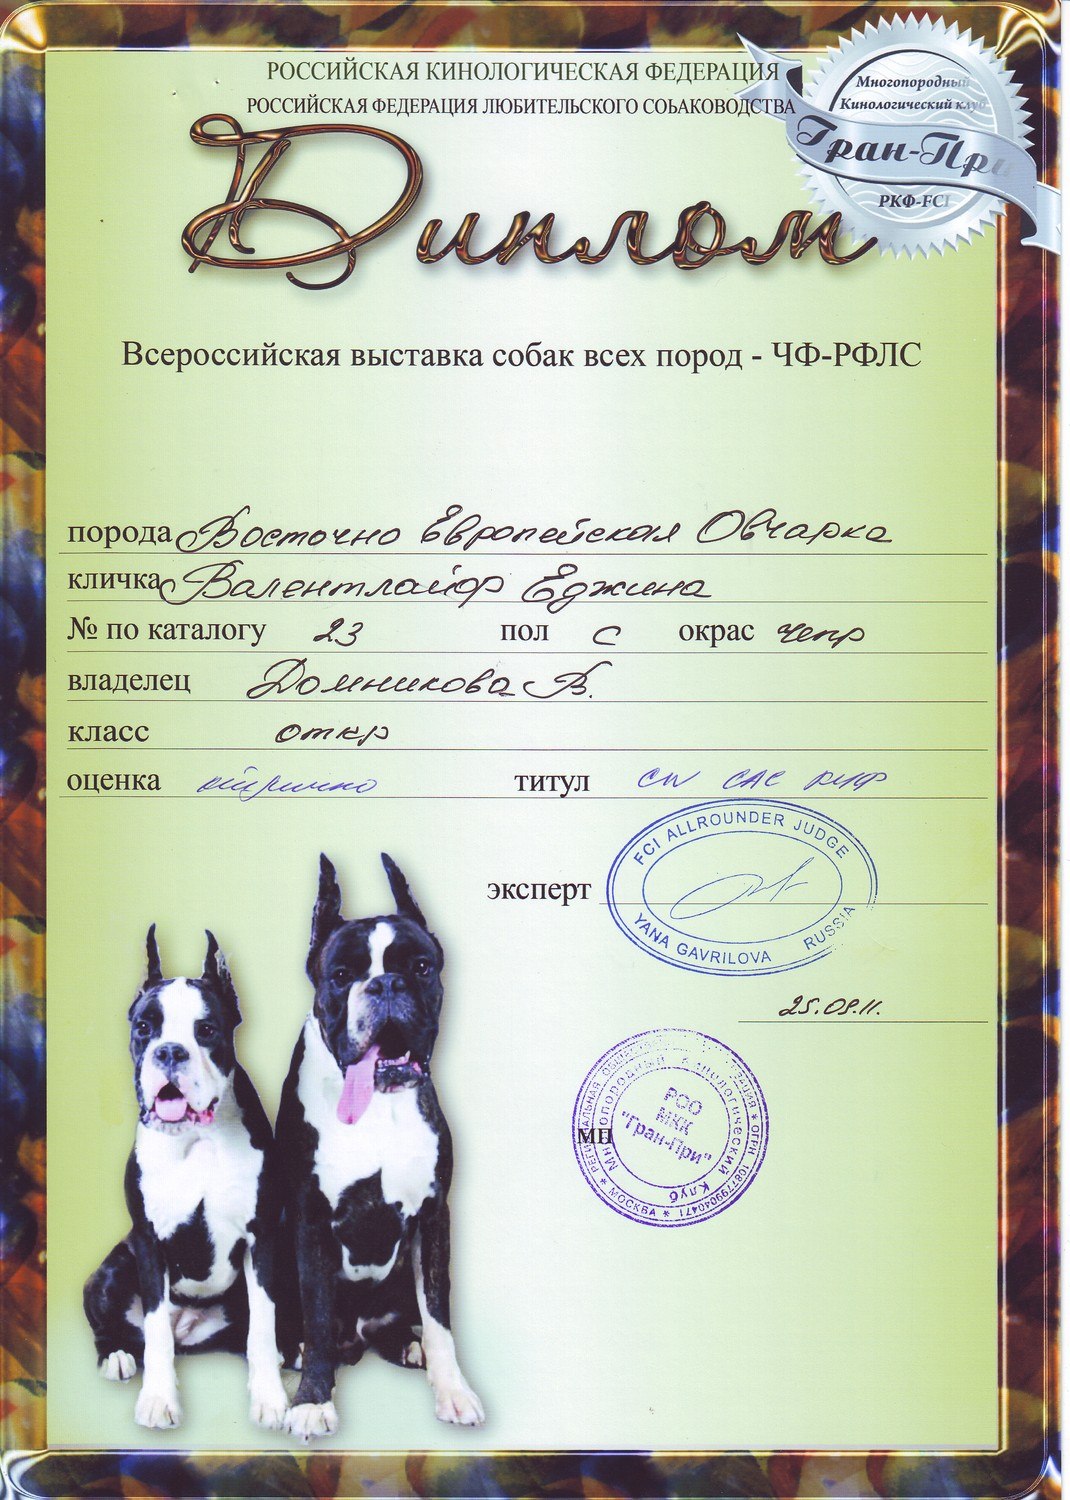 Участие в выставке собак. Образцы дипломов для выставок собак. Грамота в выставке собак.